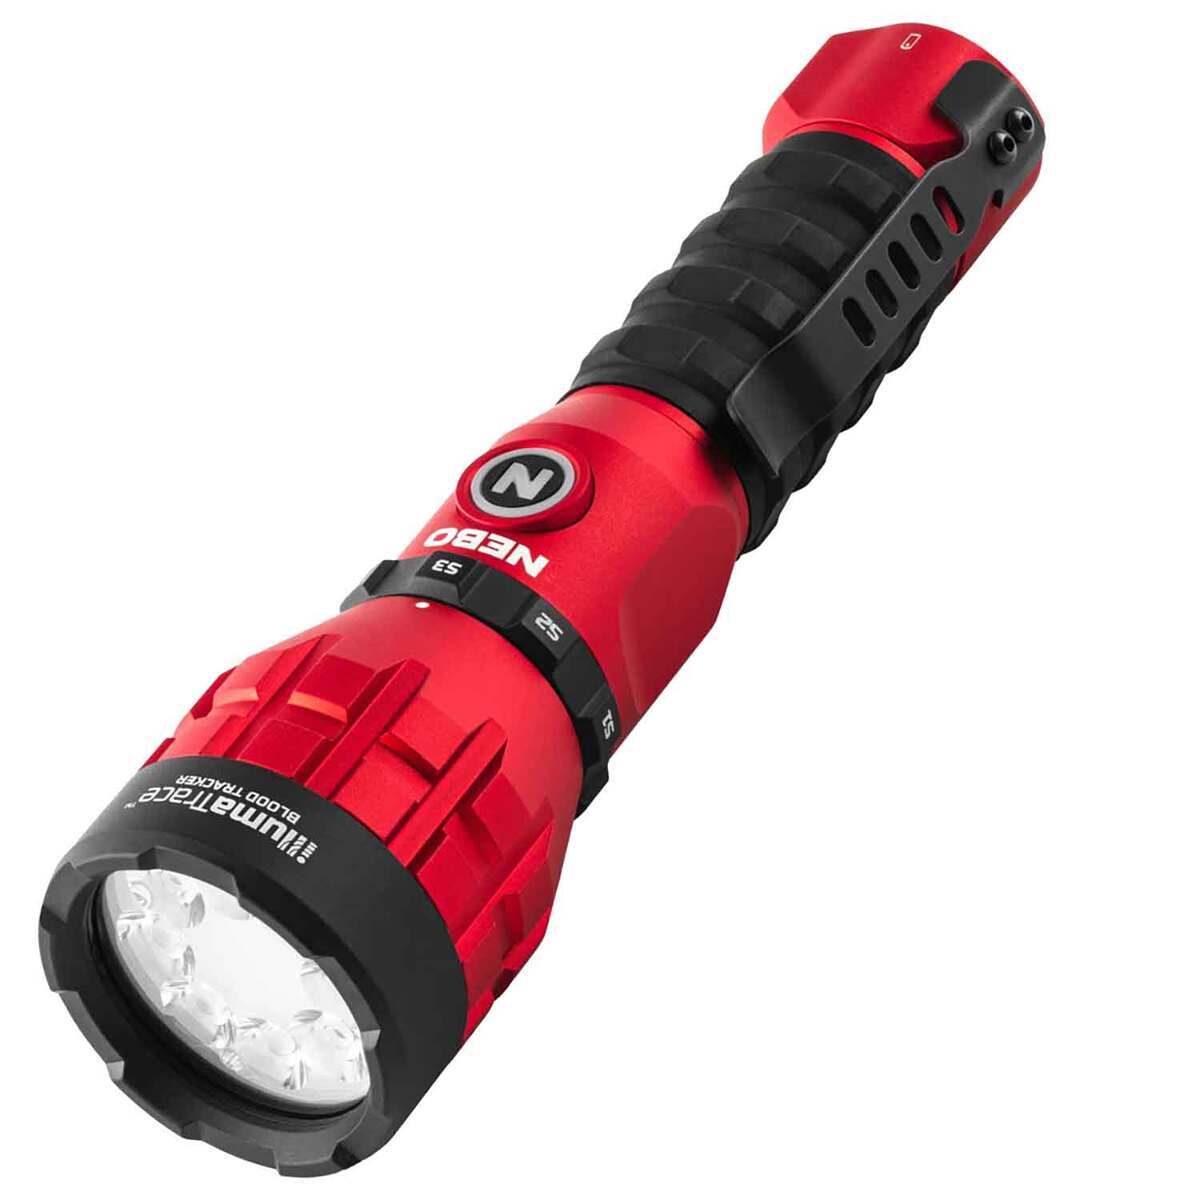 https://www.sportsmans.com/medias/nebo-illumatrace-blood-tracker-specialty-flashlight-1830090-1.jpg?context=bWFzdGVyfGltYWdlc3w1MjcxNXxpbWFnZS9qcGVnfGgwZS9oNGMvMTE1NDQ0MzI1NzQ0OTQvMTIwMC1jb252ZXJzaW9uRm9ybWF0X2Jhc2UtY29udmVyc2lvbkZvcm1hdF9zbXctMTgzMDA5MC0xLmpwZ3w5Y2Y1ODNkZjJjZDU5Zjc2NWFkYTRkYWI5NmU4YjE4NTY2MzVlNGI2N2ExNTZhZjJhMmQ3NDI3MzM5Y2YwYzk1